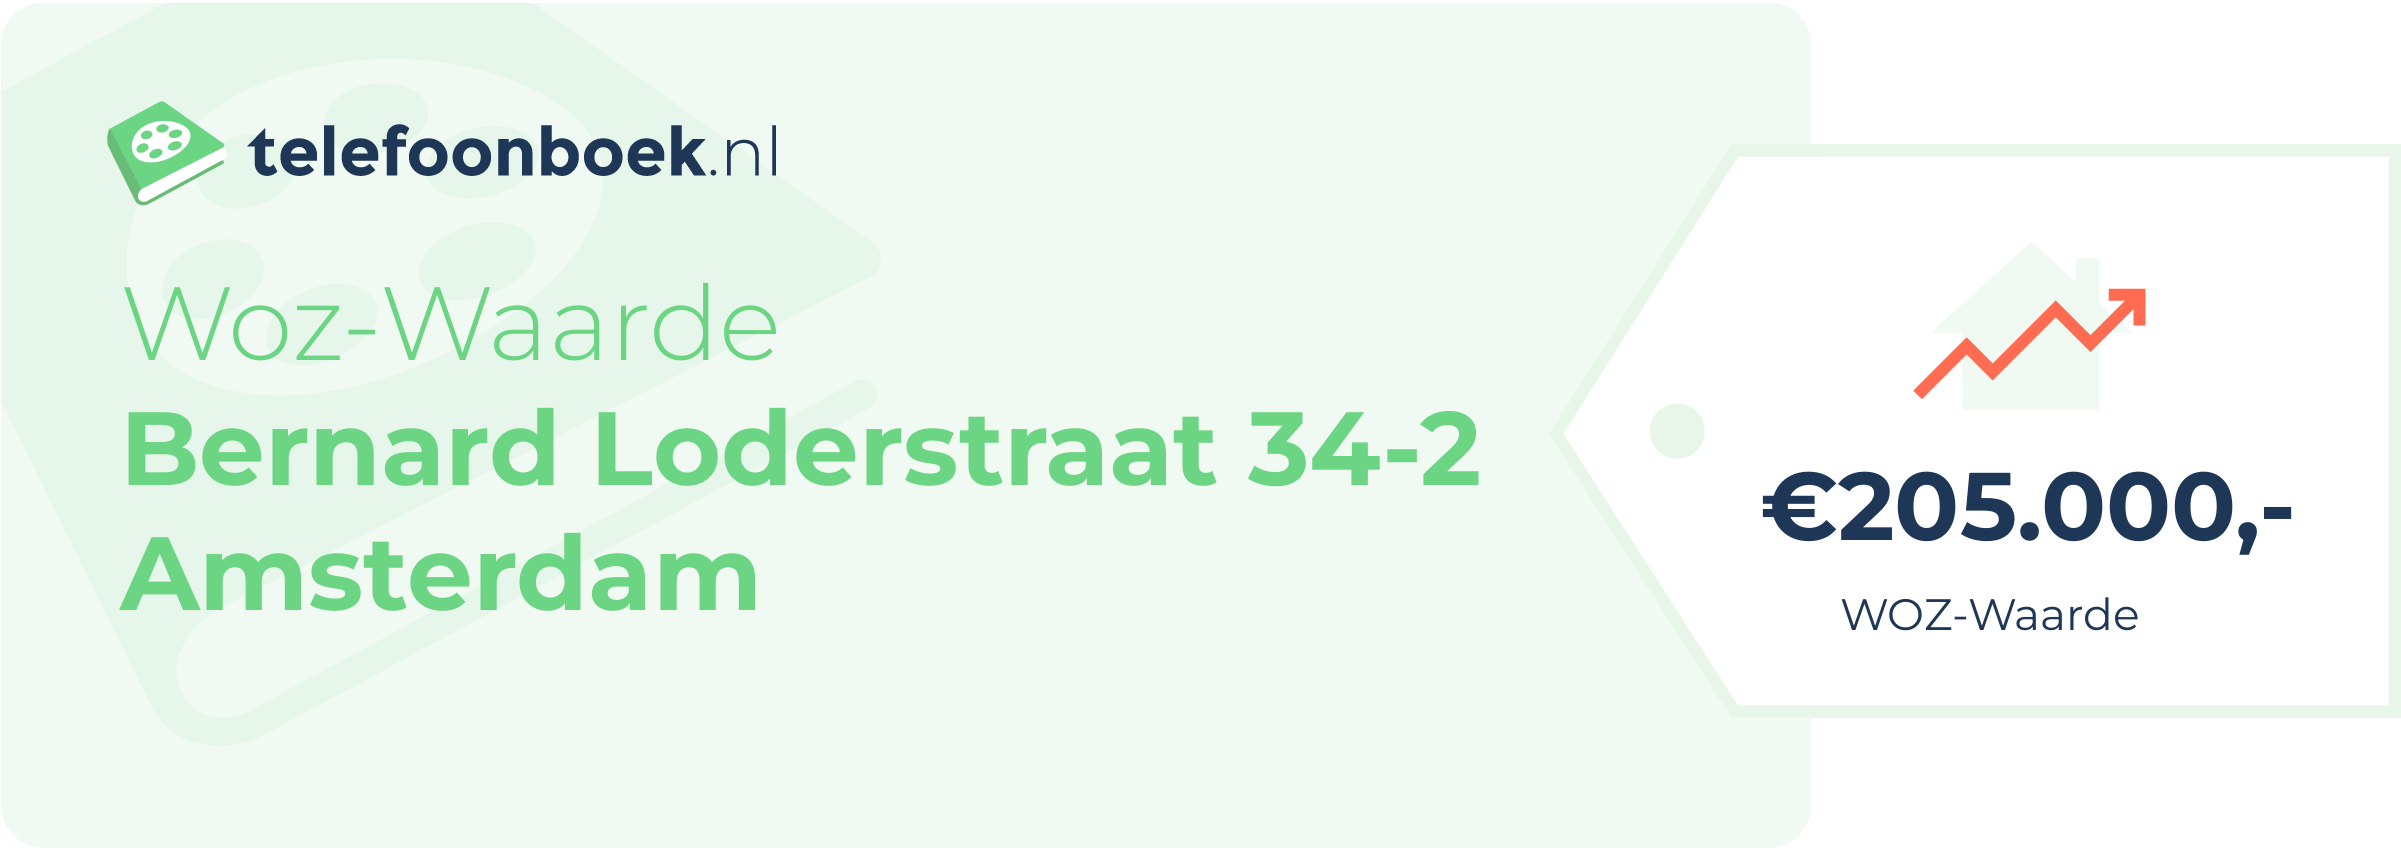 WOZ-waarde Bernard Loderstraat 34-2 Amsterdam